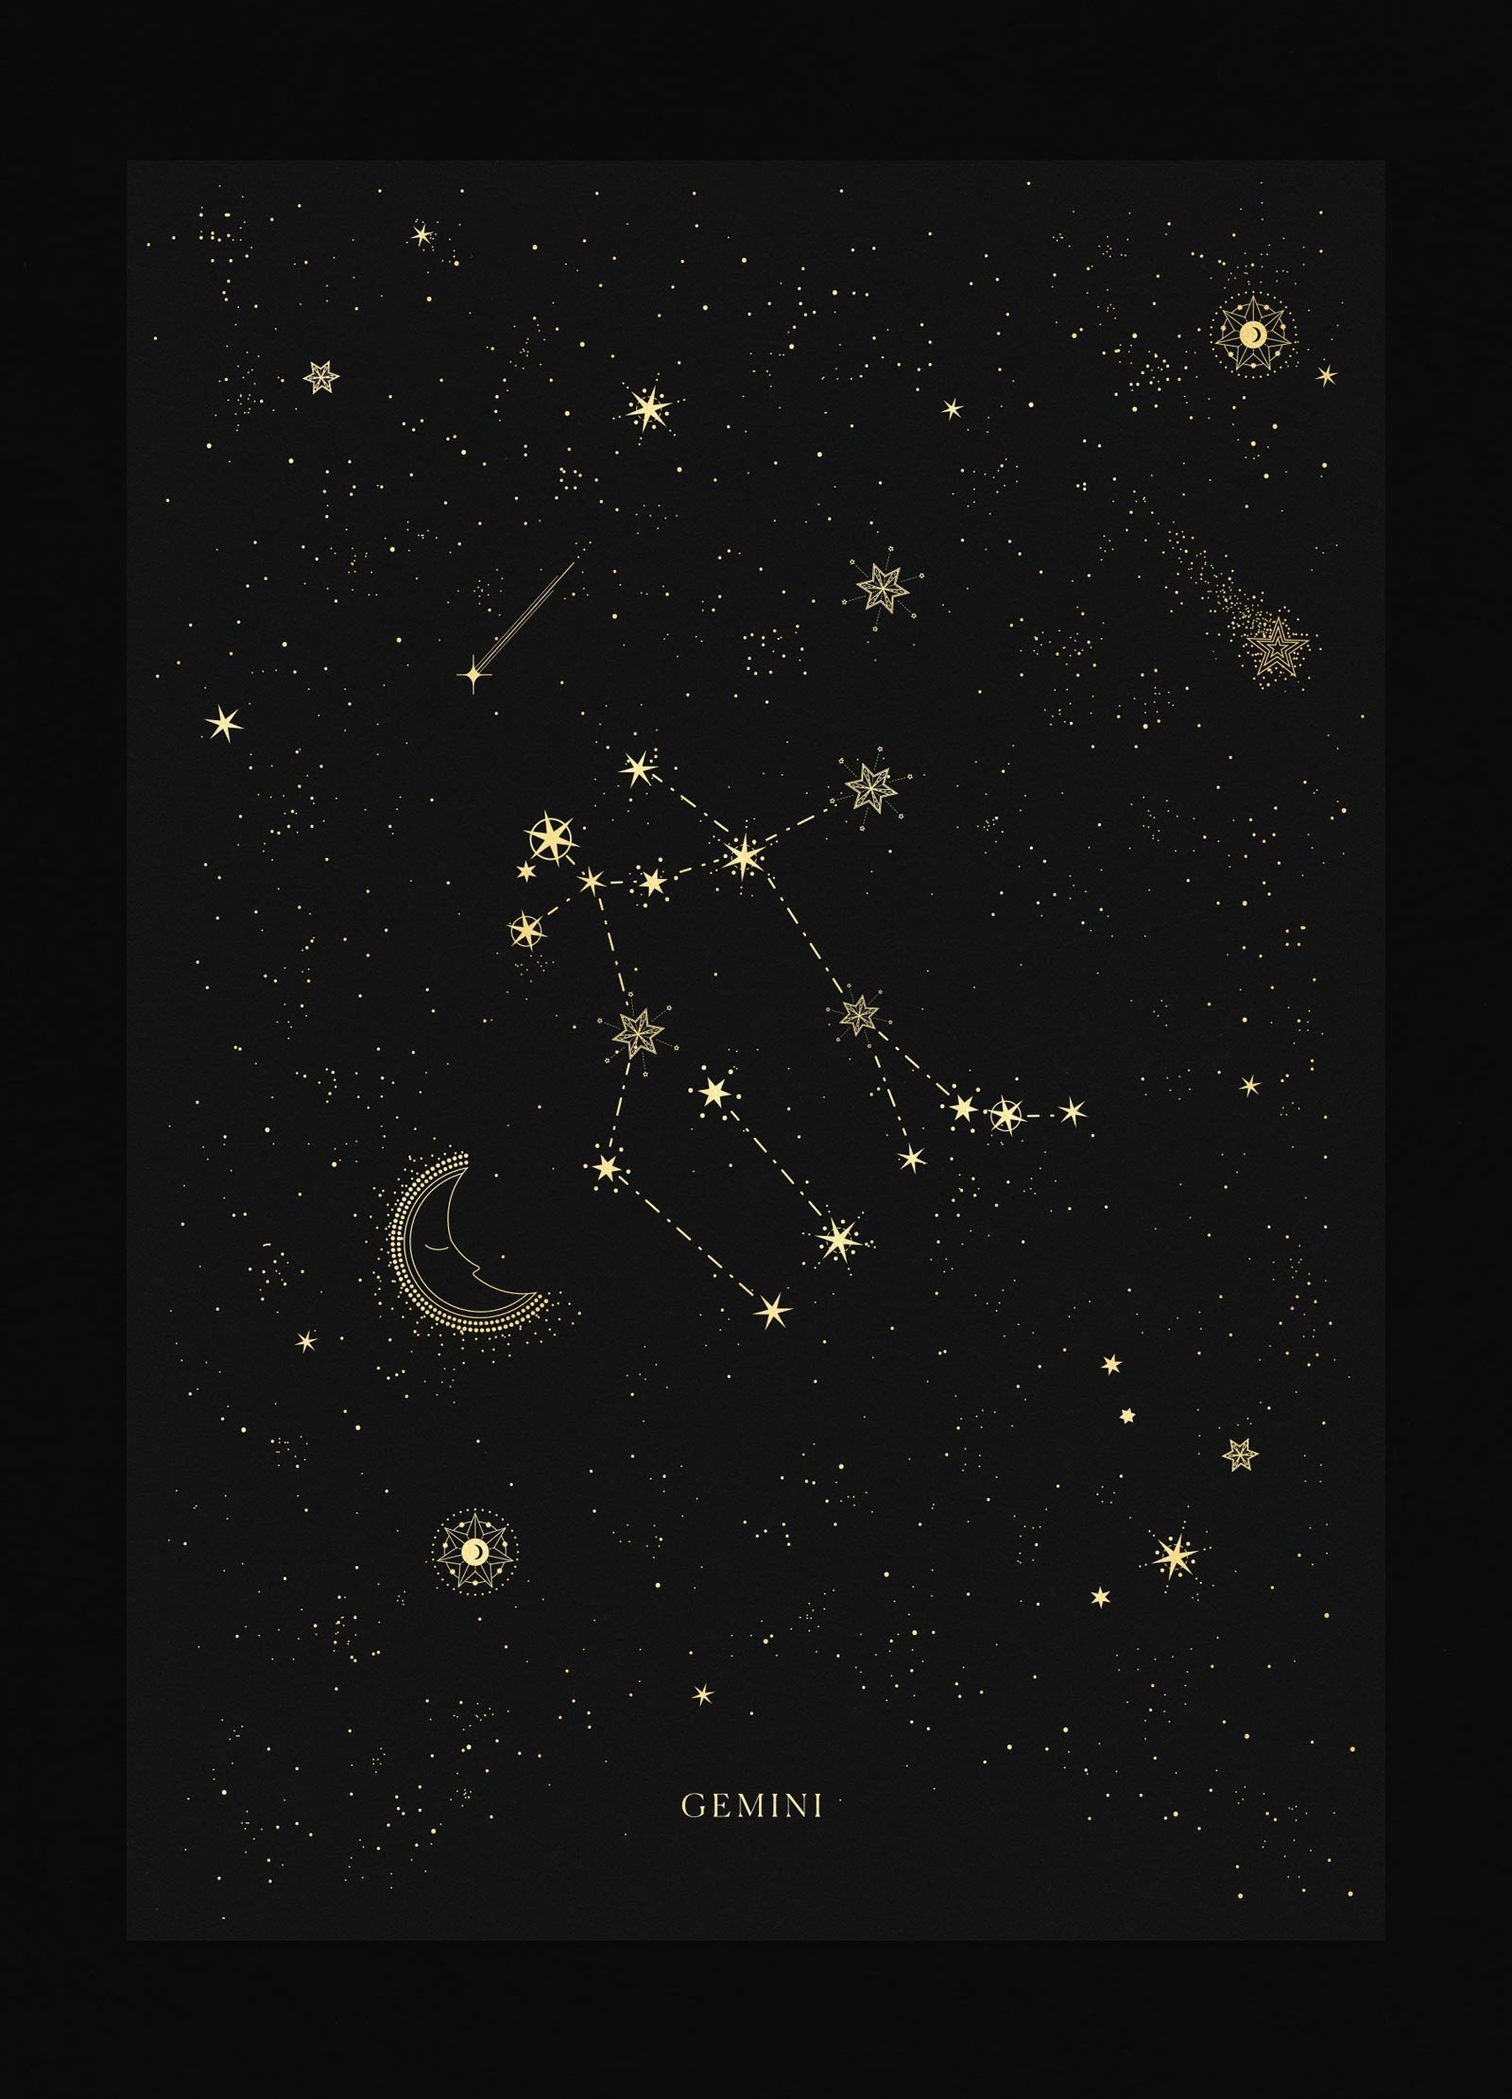 Gemini Constellation. Aquarius constellation tattoo, Sagittarius